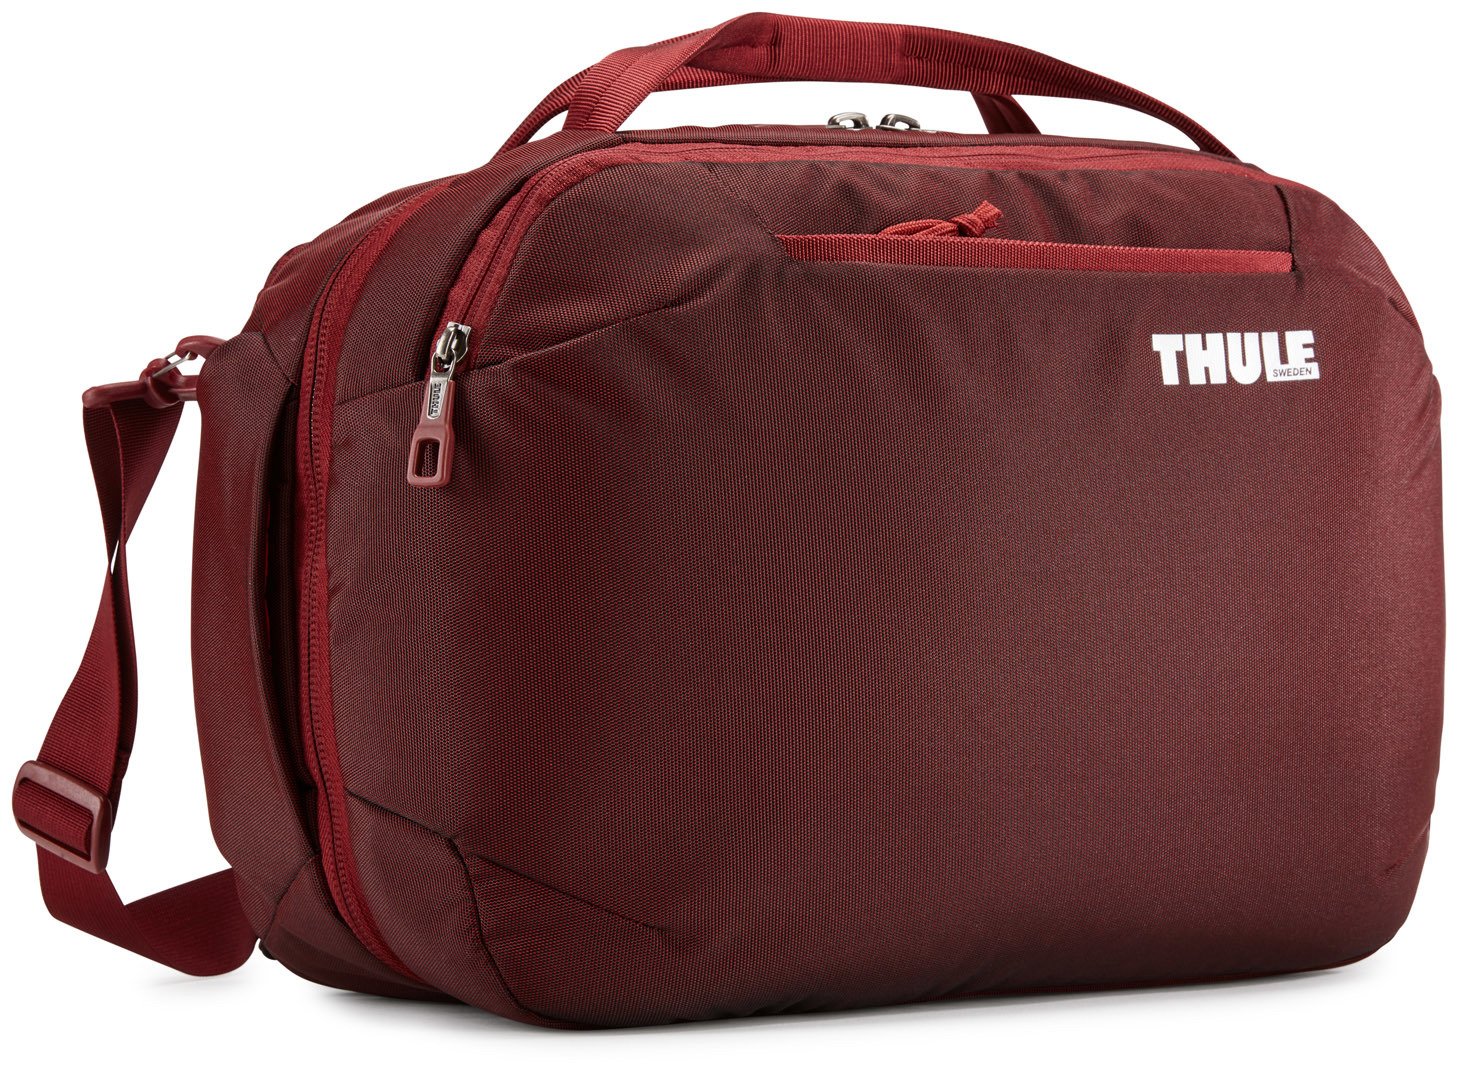 Thule Subterra Boarding Bag 23 л дорожная сумка из нейлона красная